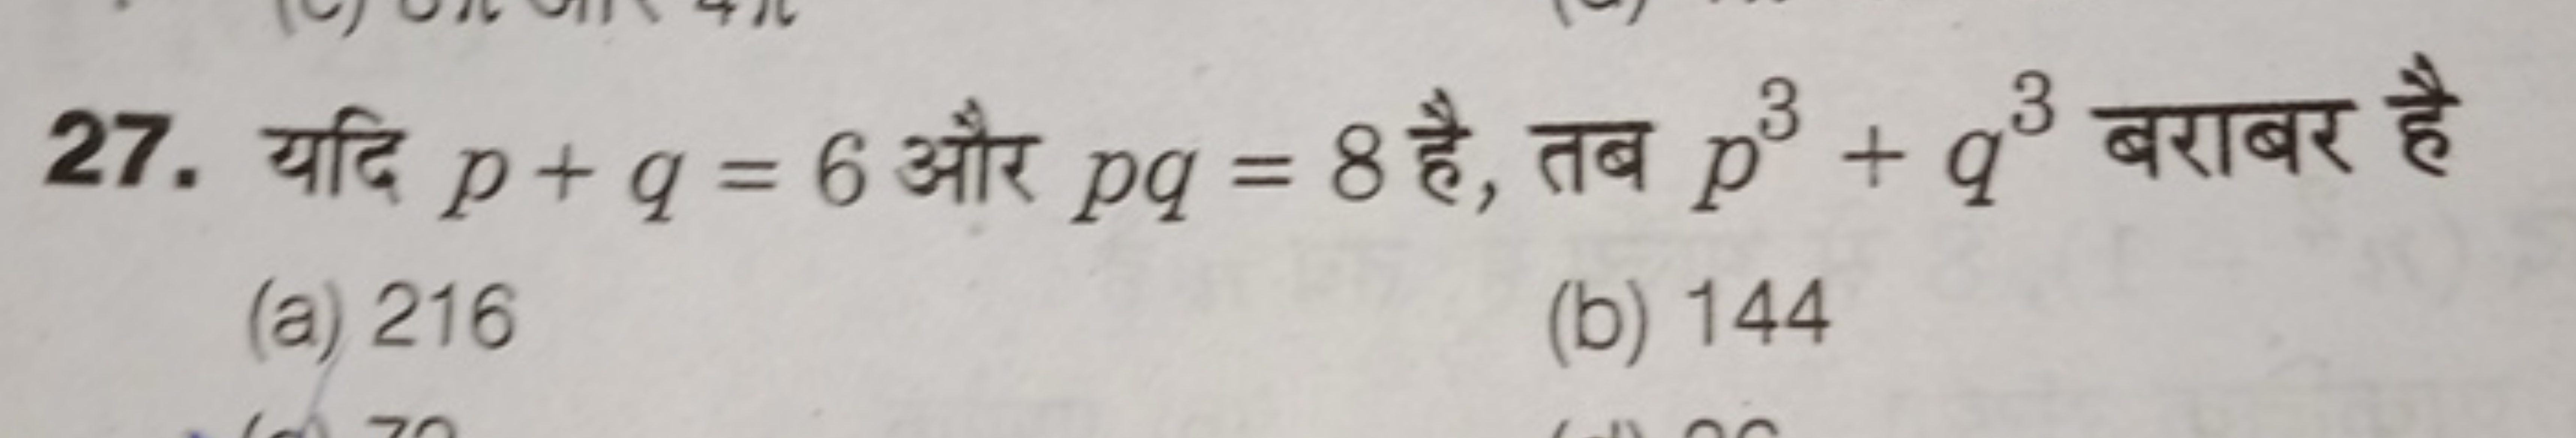 27. यदि p+q=6 और pq=8 है, तब p3+q3 बराबर है
(a) 216
(b) 144